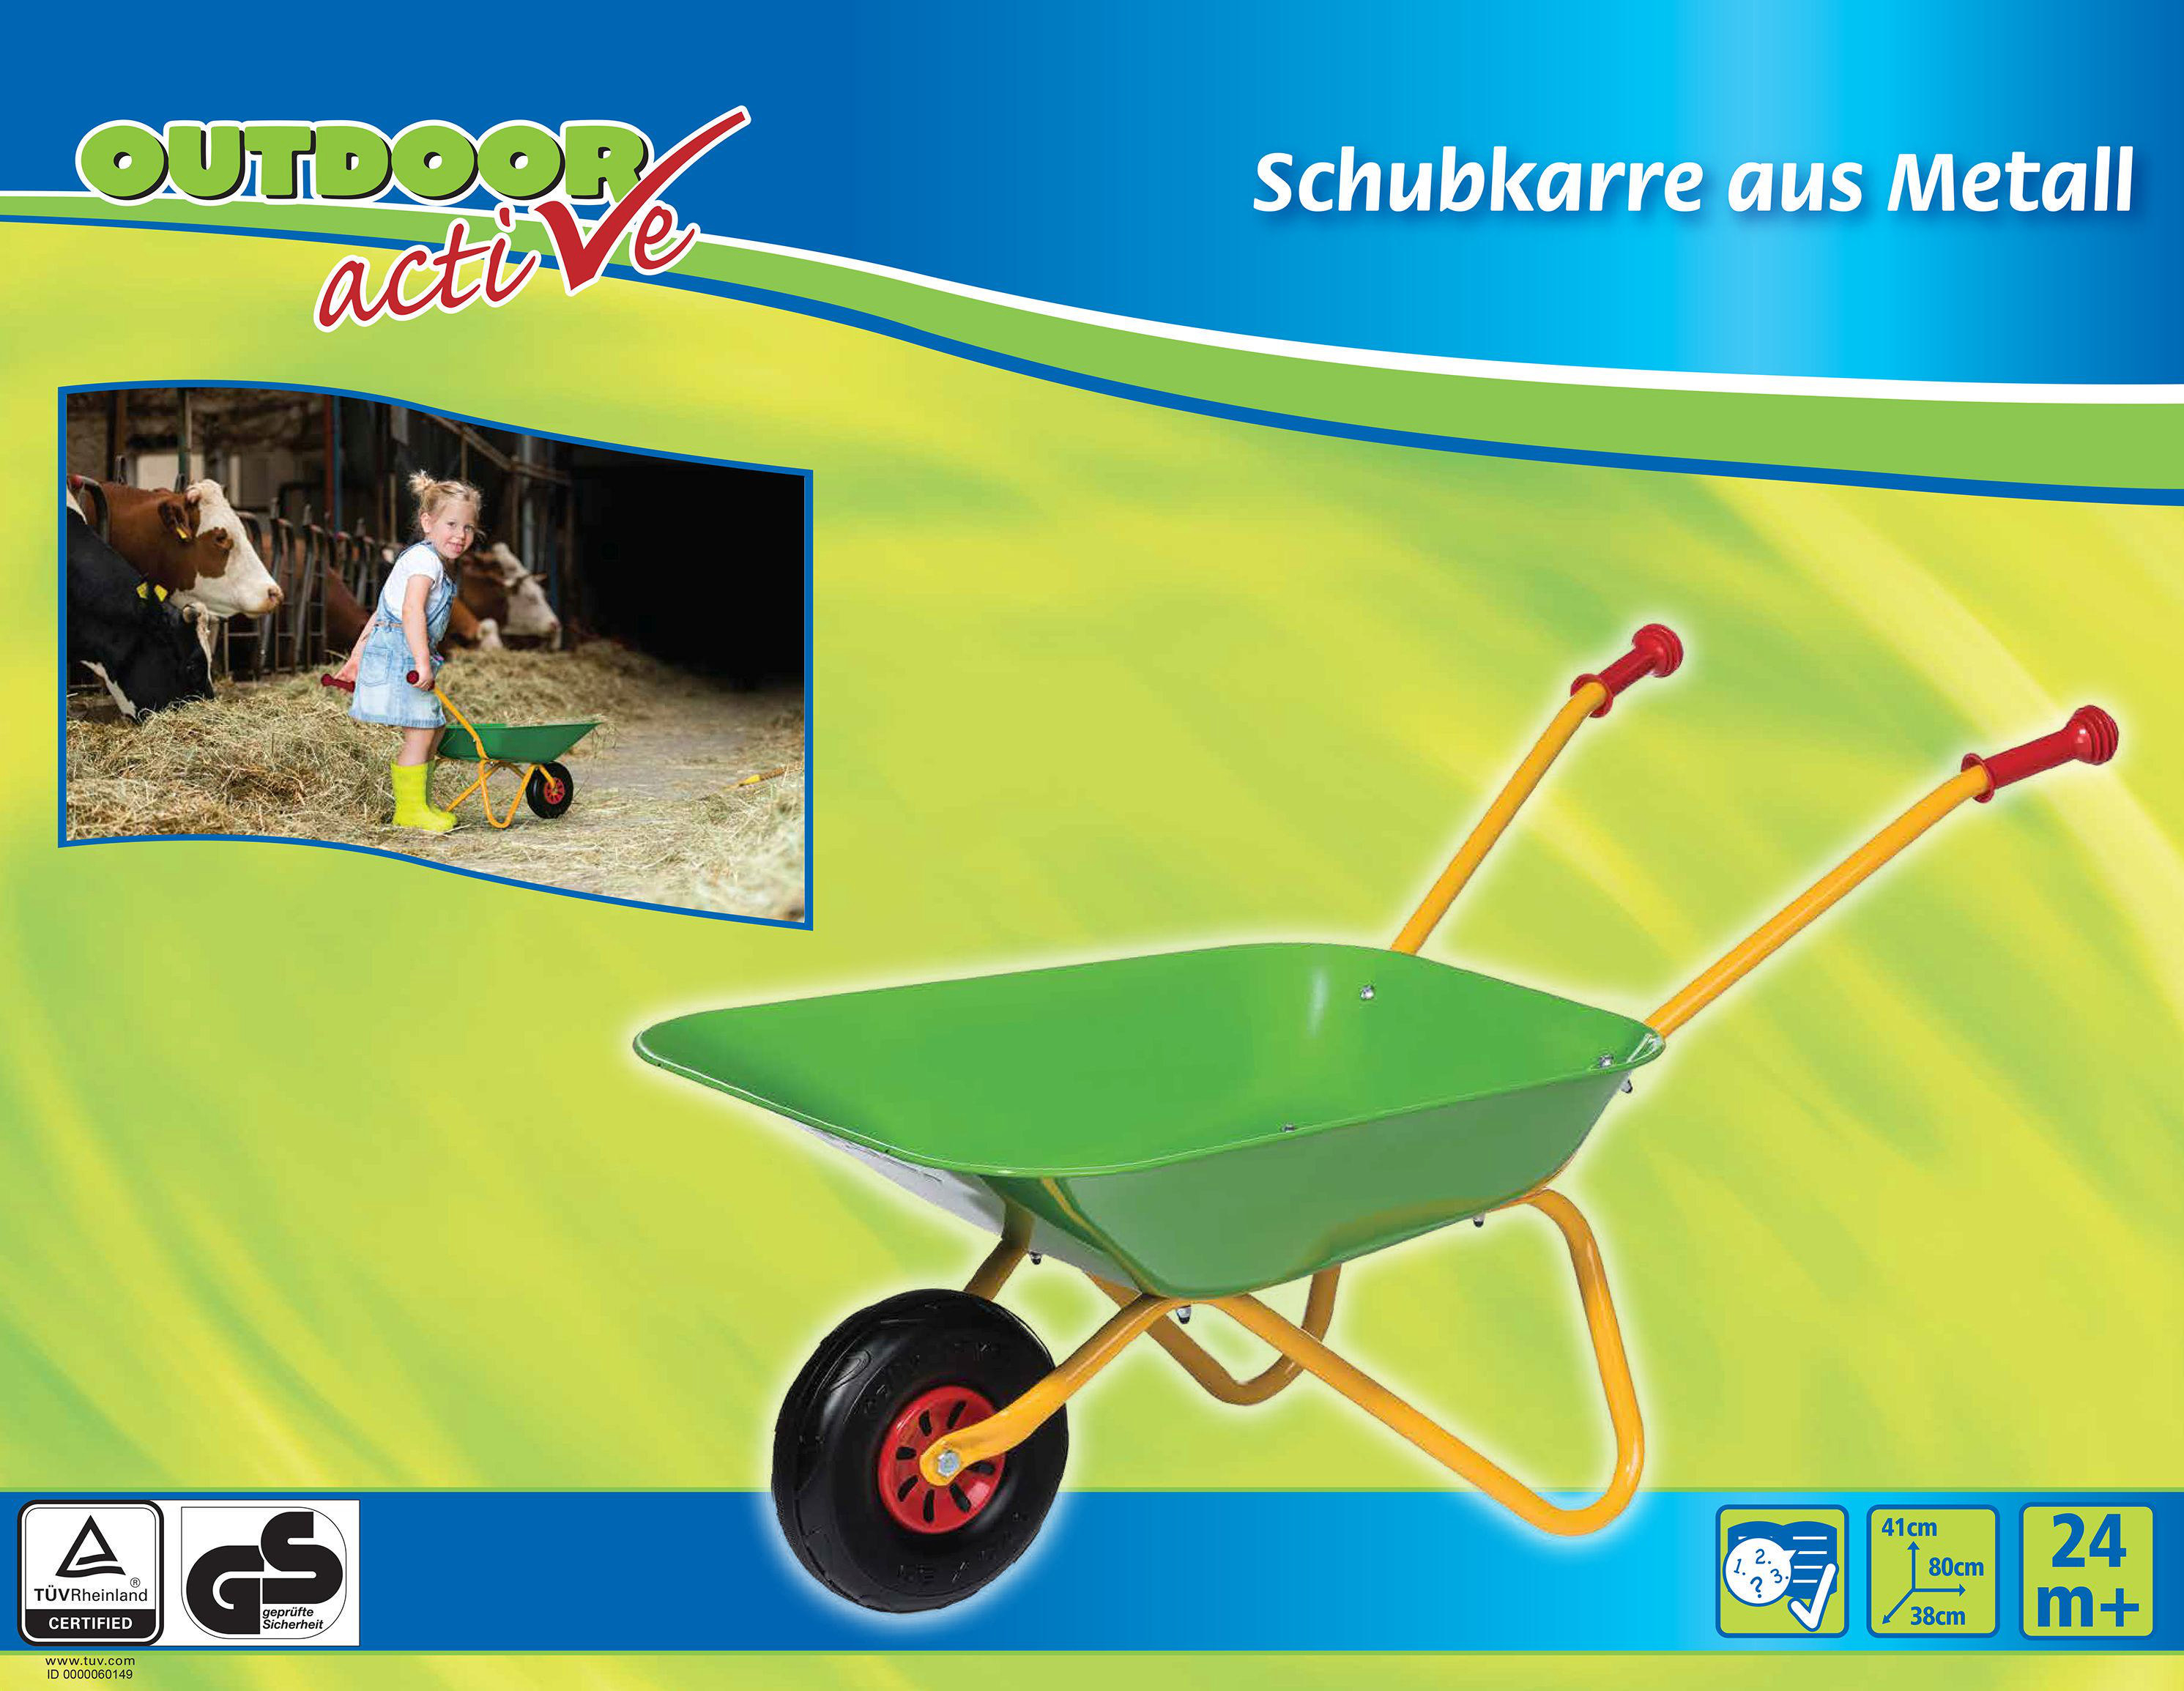 Grün/Gelb Active Kinderschubkarre OUTDOOR Schubkarre-Metall,grün/gelb ACTIVE Outdoor